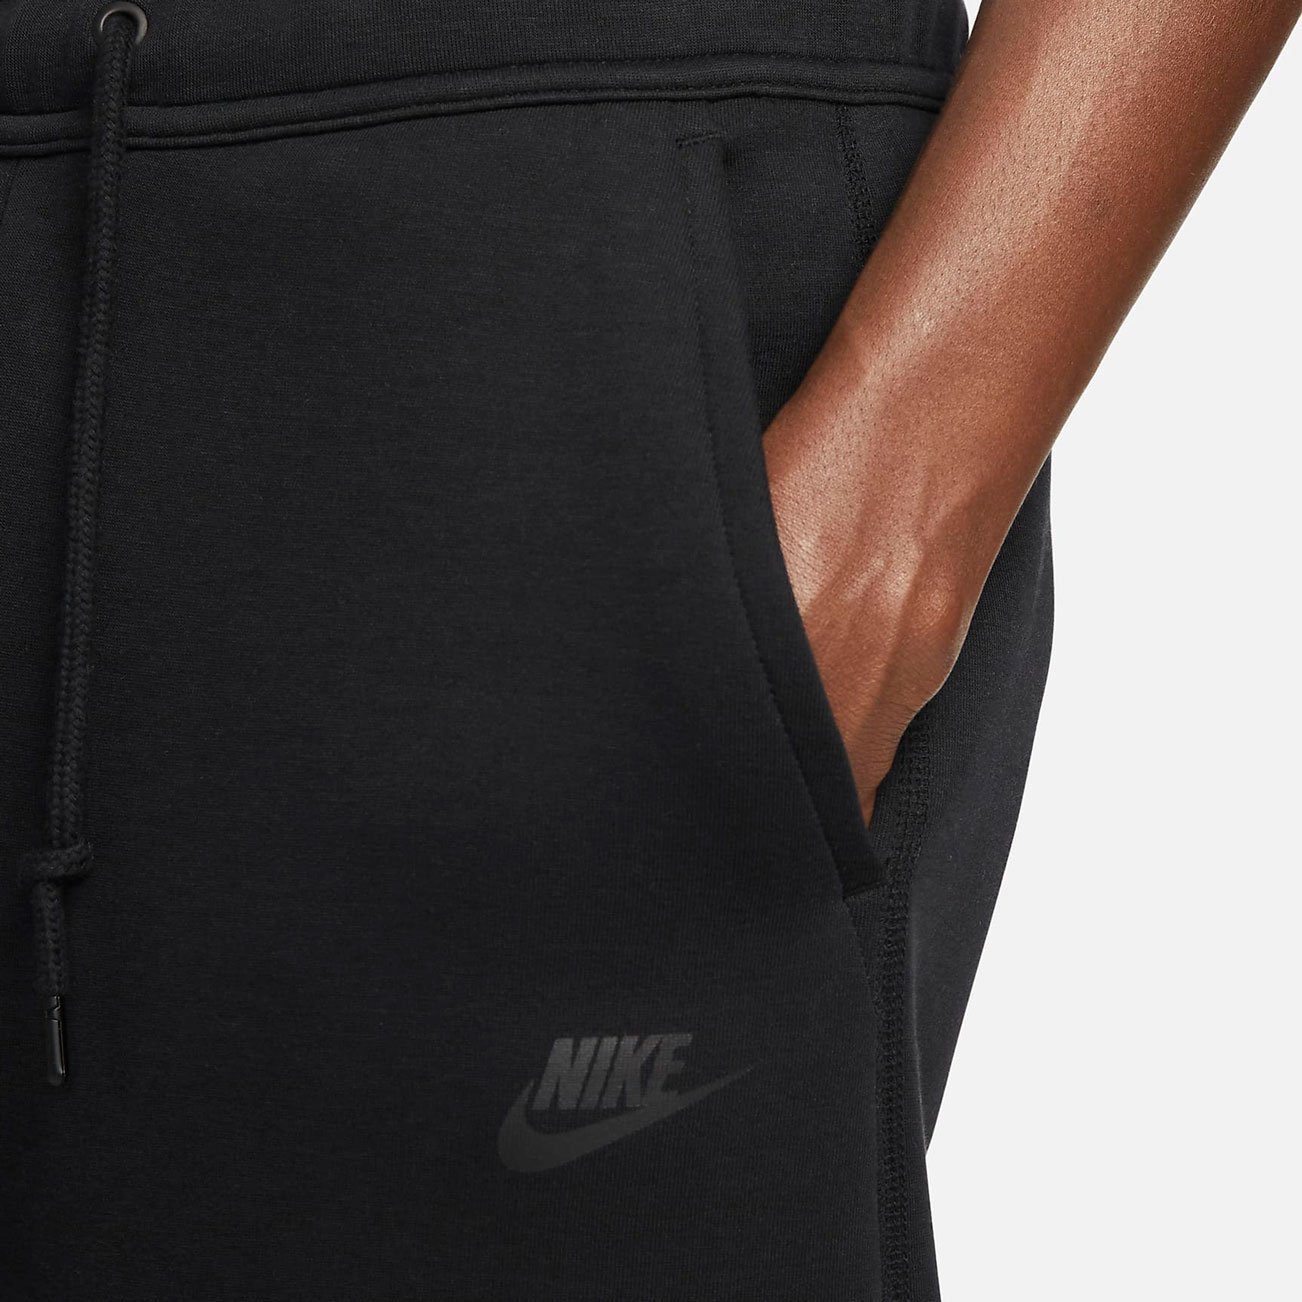 Брюки Nike Sportswear Tech Fleece